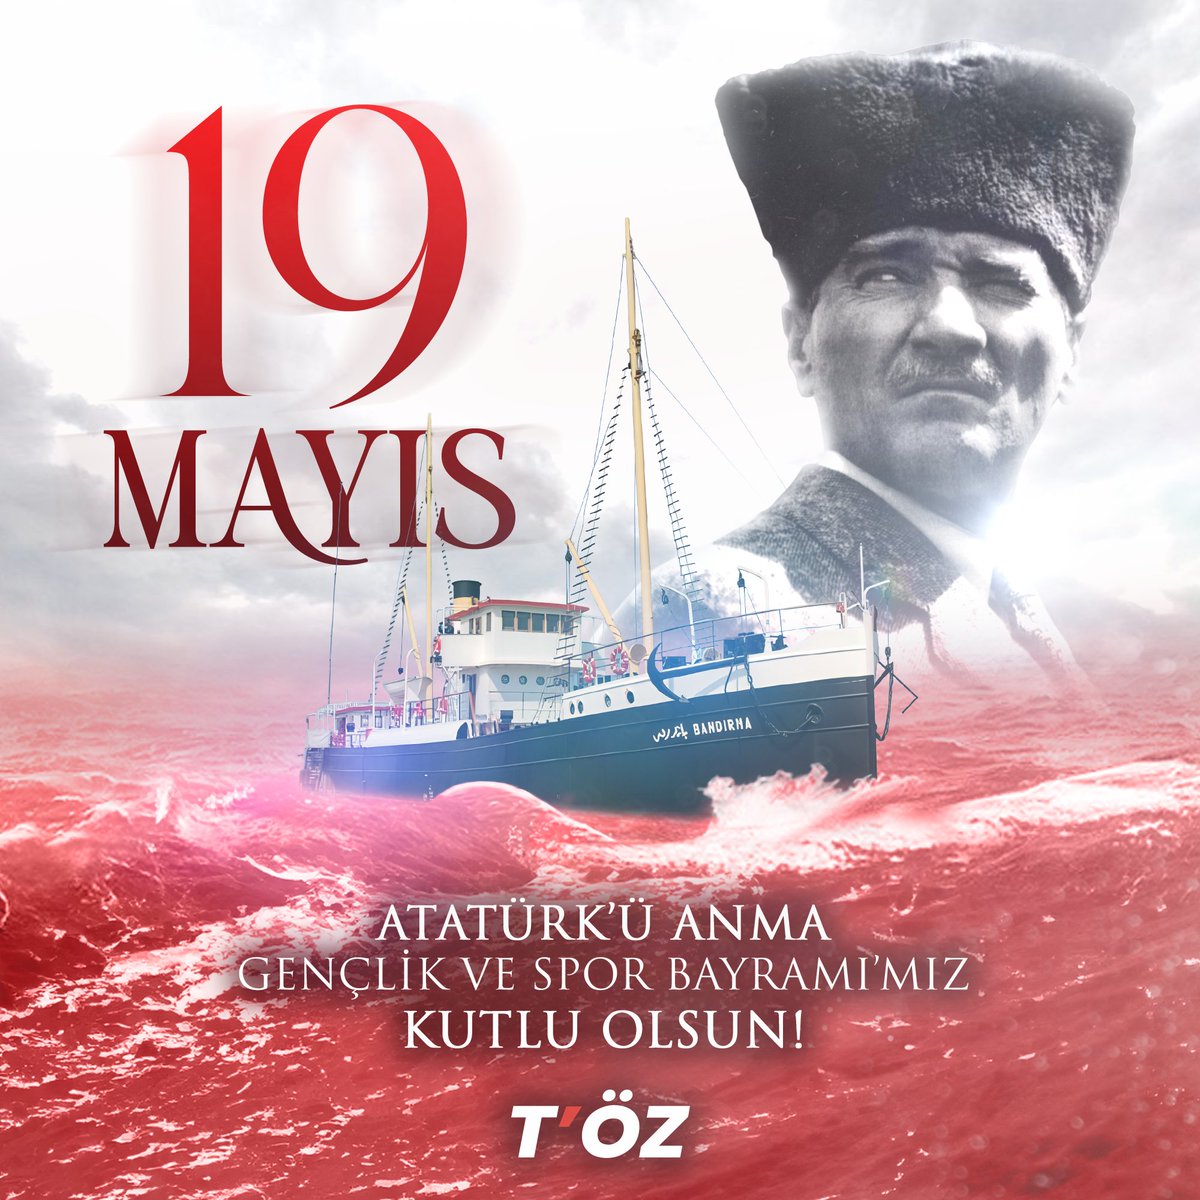 Onu silmeye, yok etmeye çalışanlara karşın her daim izinden gitmeye devam edeceğiz. 19 Mayıs Atatürk'ü Anma Gençlik ve Spor Bayramı'mız kutlu olsun. #19Mayıs